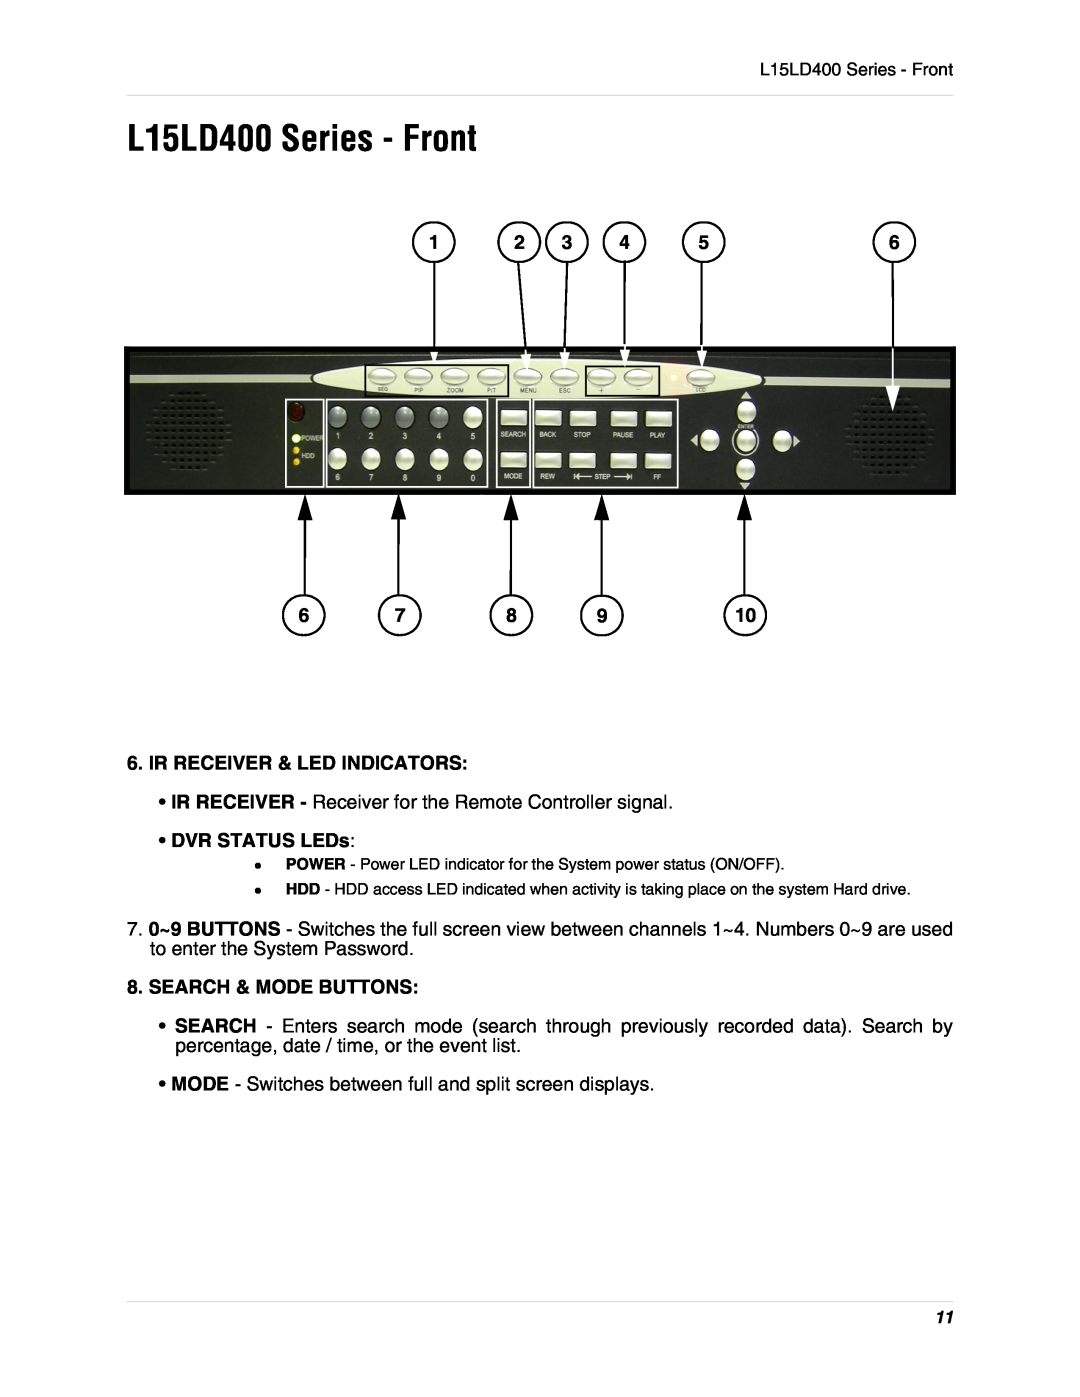 LOREX Technology L15D400 L15LD400 Series - Front, Ir Receiver & Led Indicators, DVR STATUS LEDs, Search & Mode Buttons 